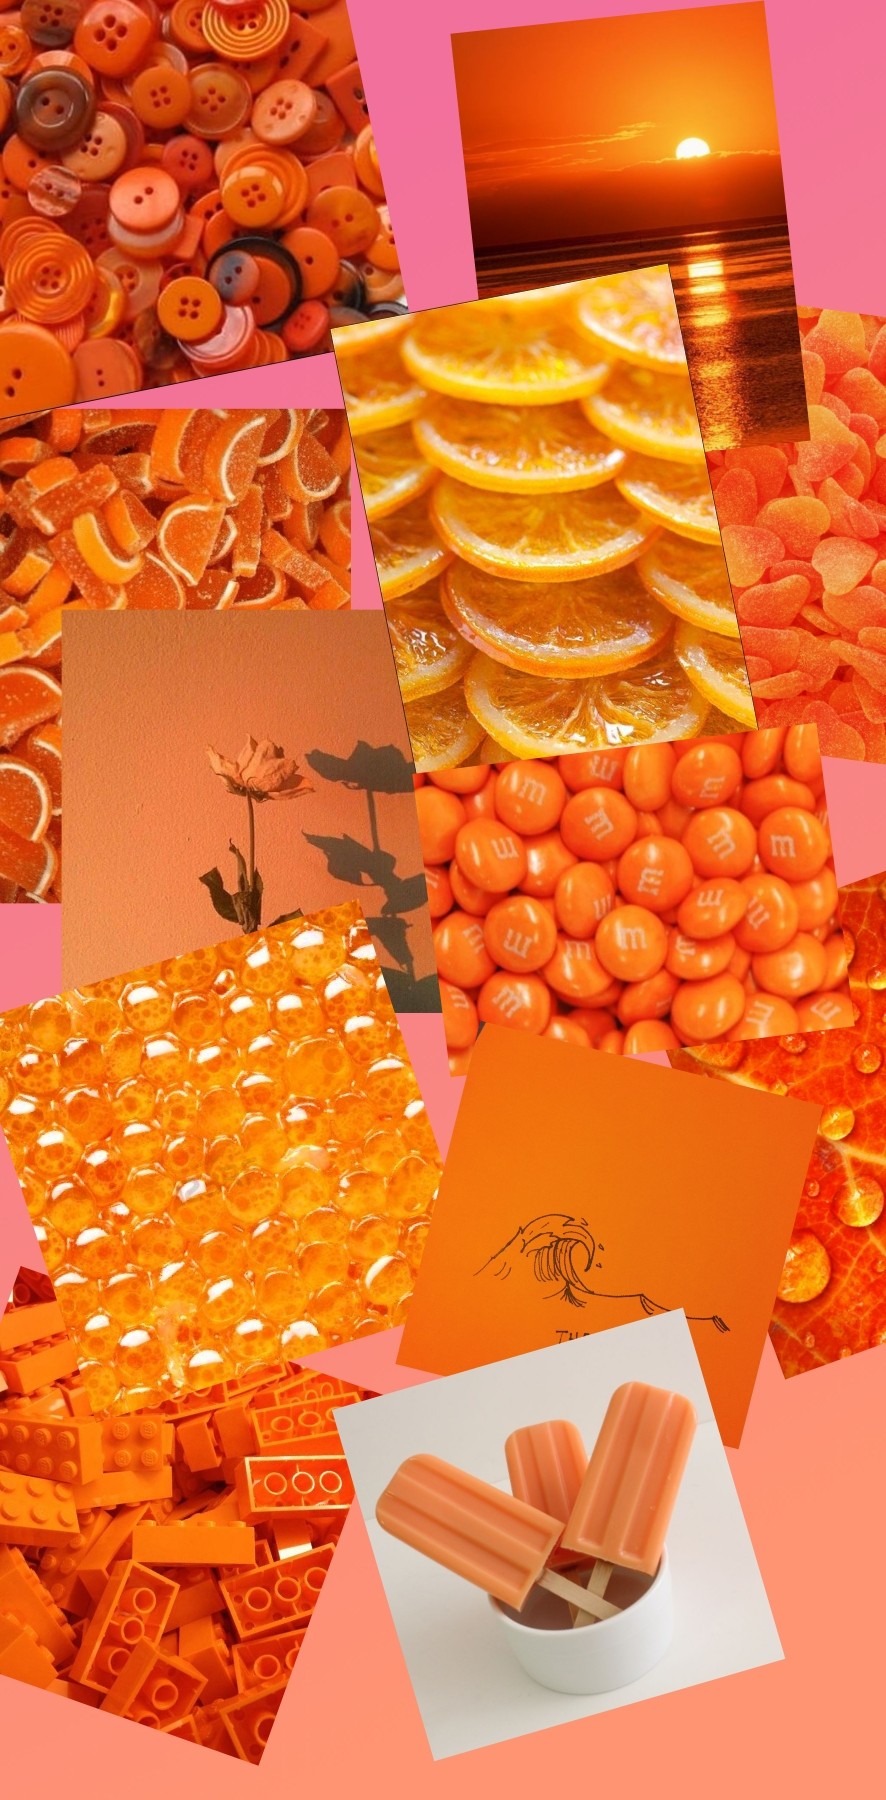 Orange things 😝
(hey, I'm back)